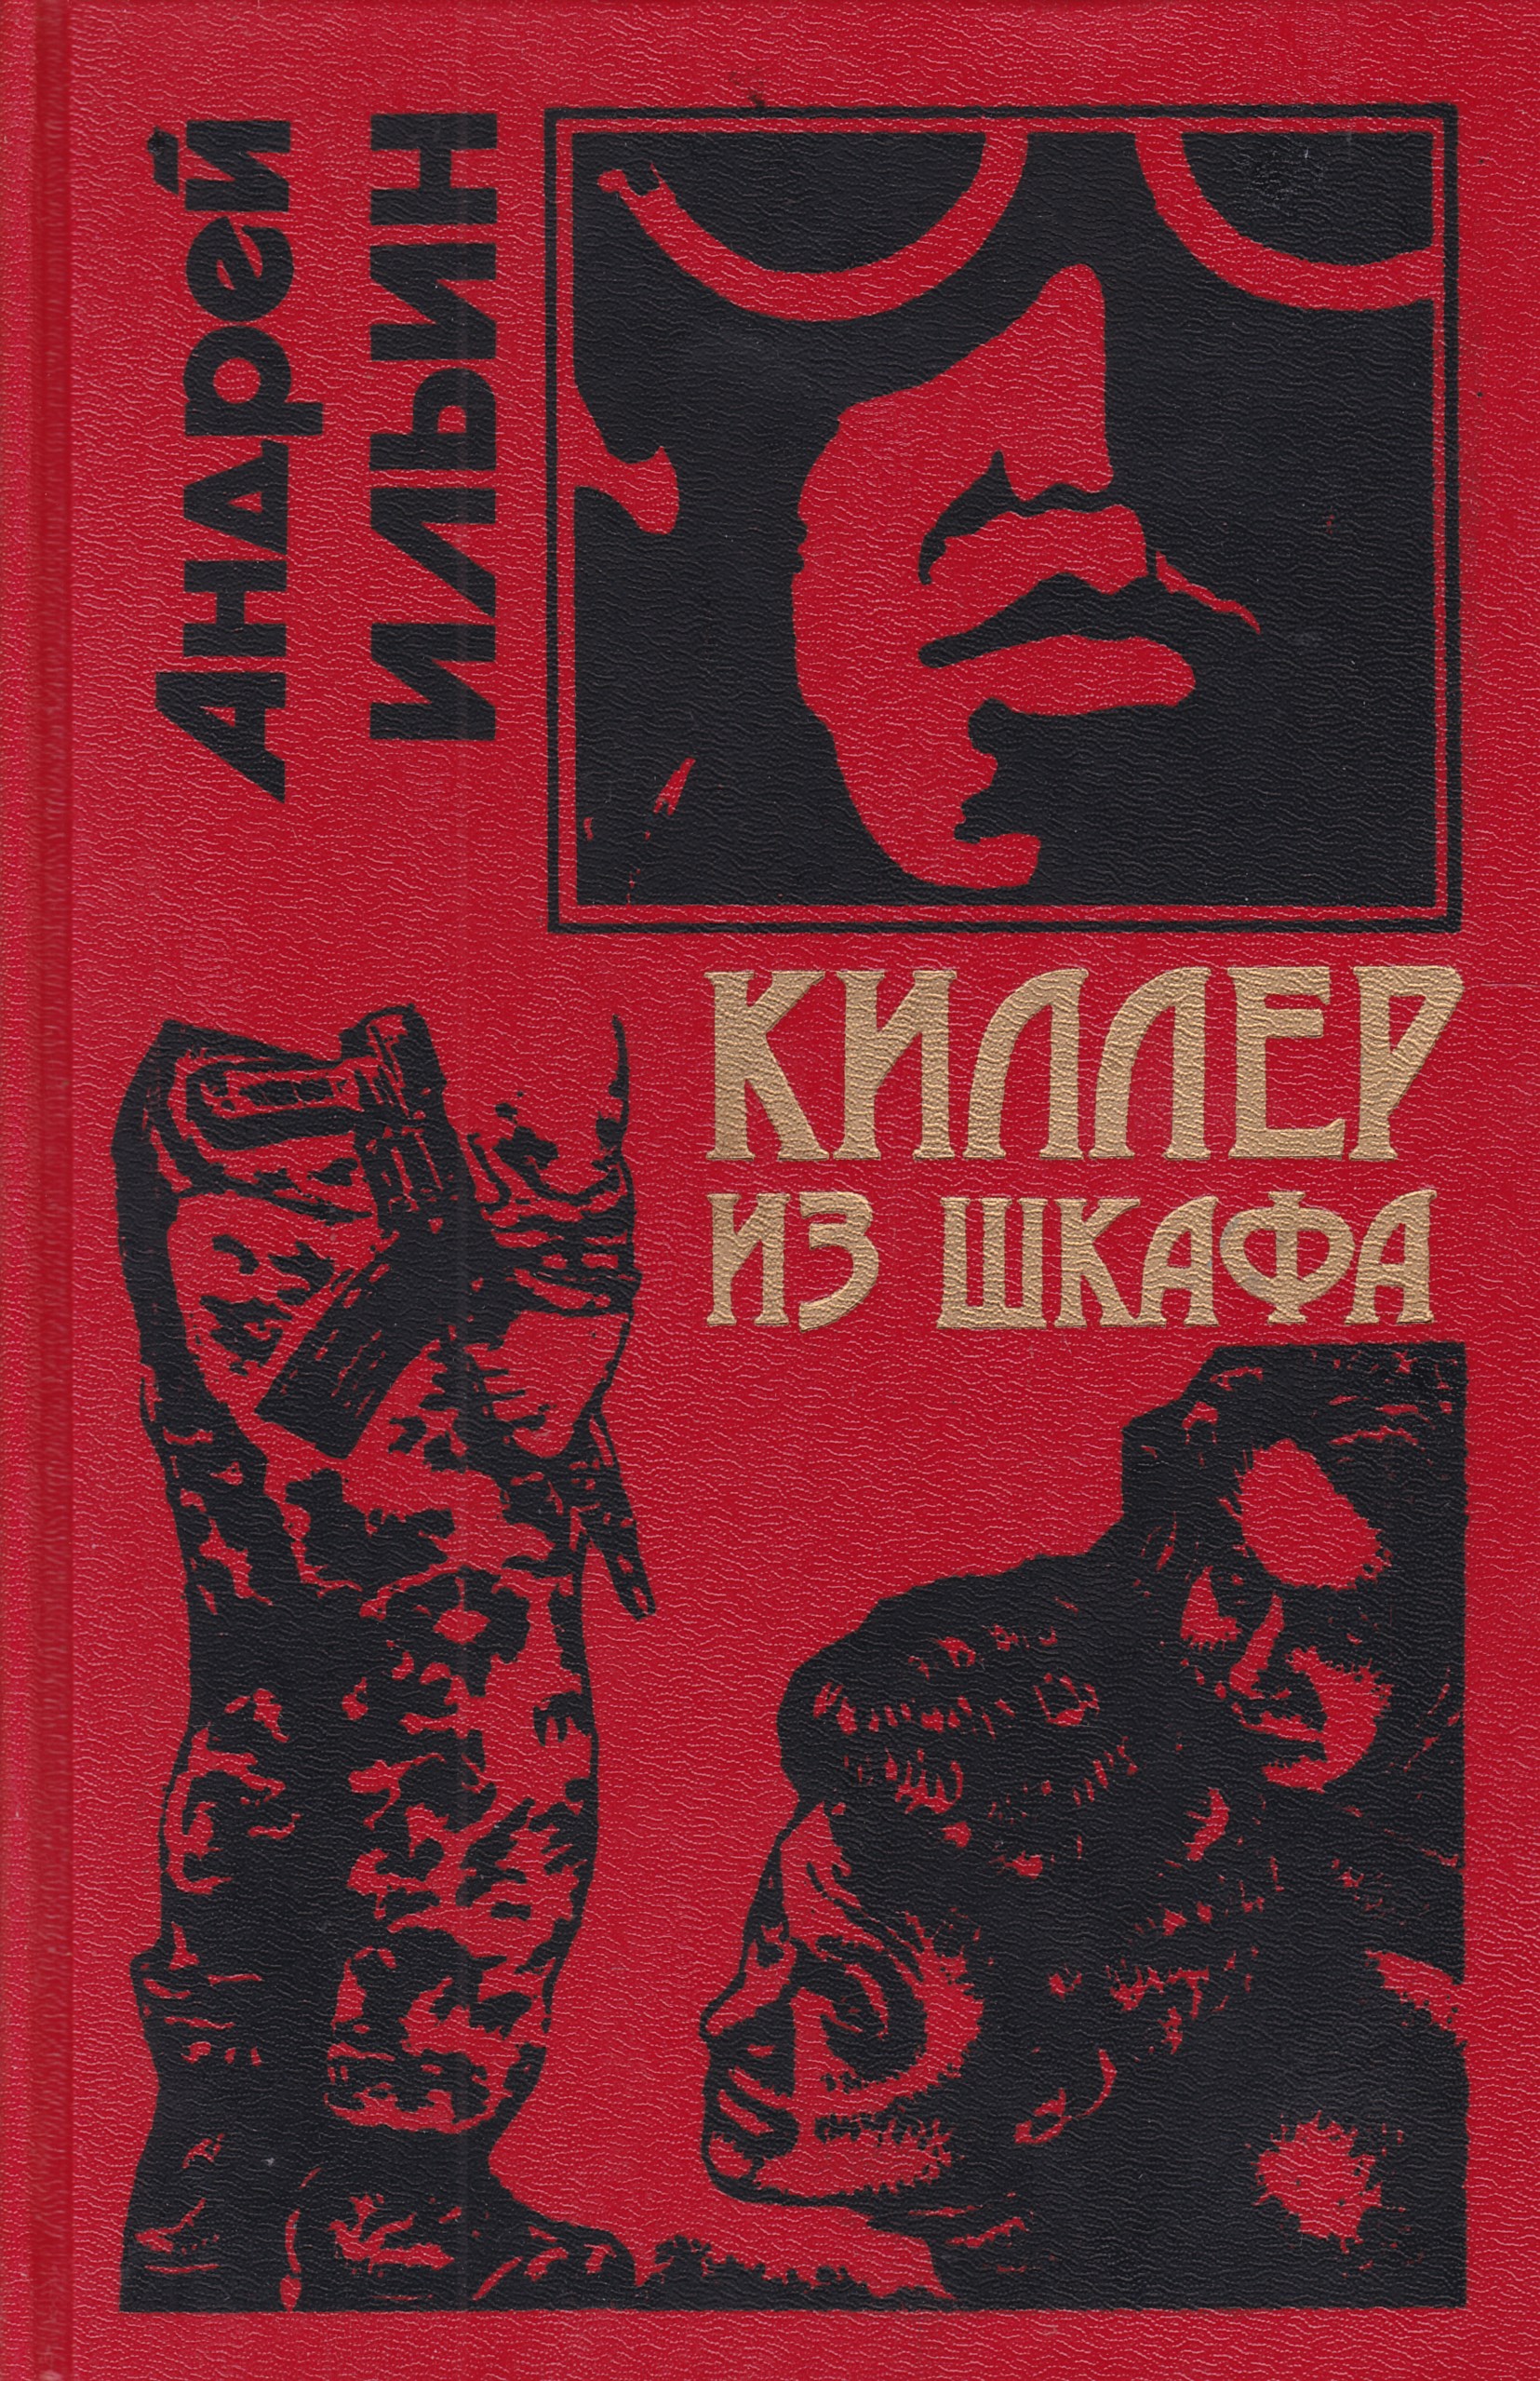 Киллер из шкафа Андрей Ильин книга